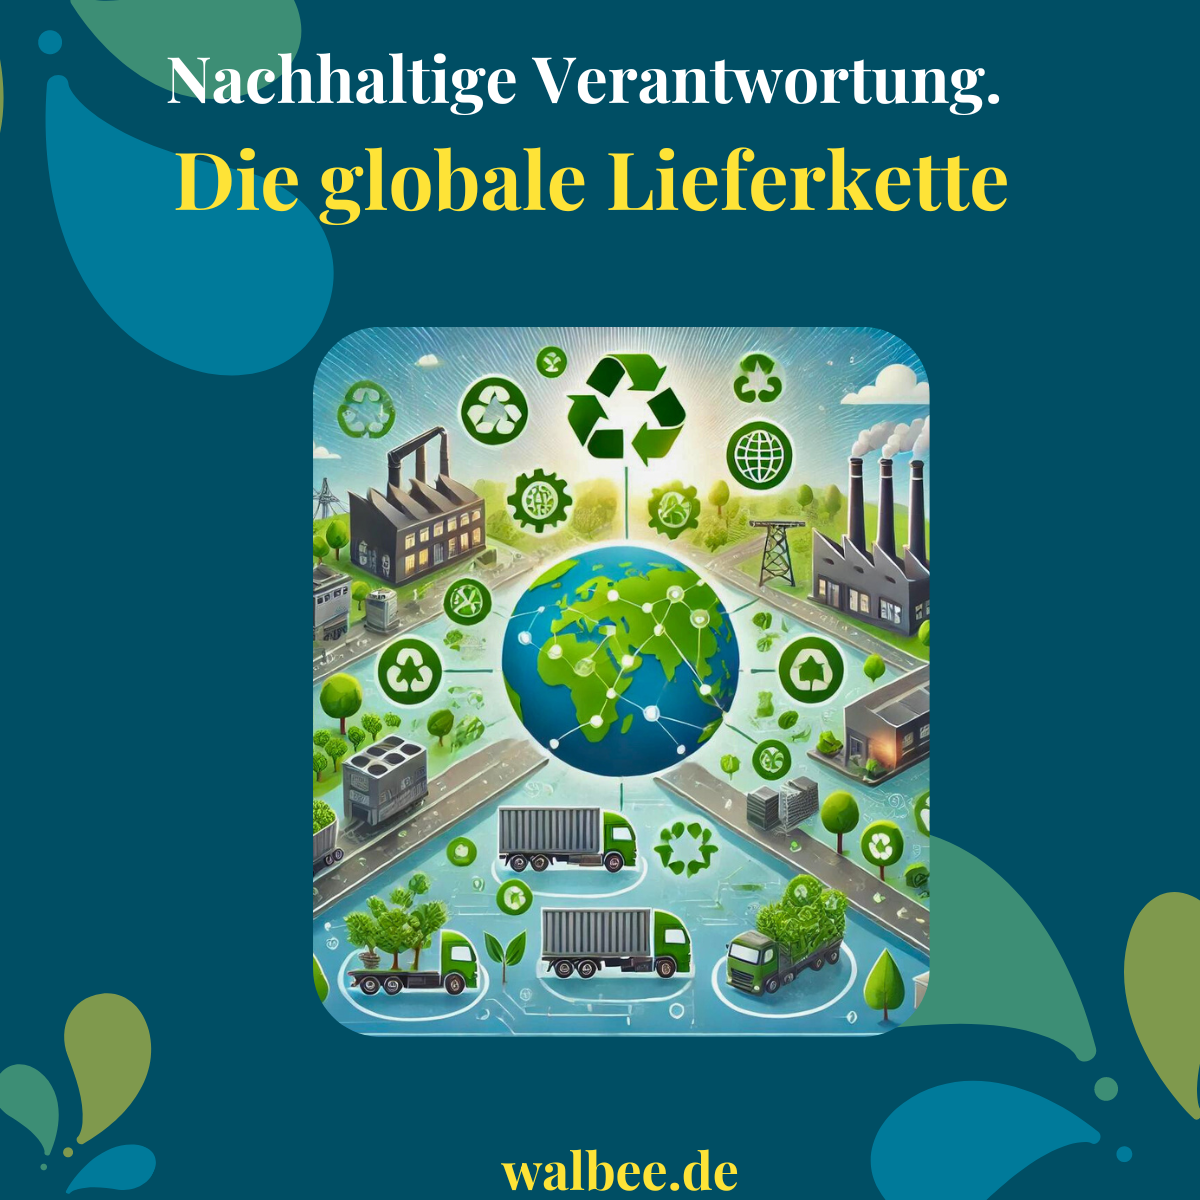 Illustration der globalen Lieferkette mit Symbolen für Nachhaltigkeit, die verschiedene Stufen von Rohstoffgewinnung über Produktion bis hin zur Auslieferung des Endprodukts zeigt.